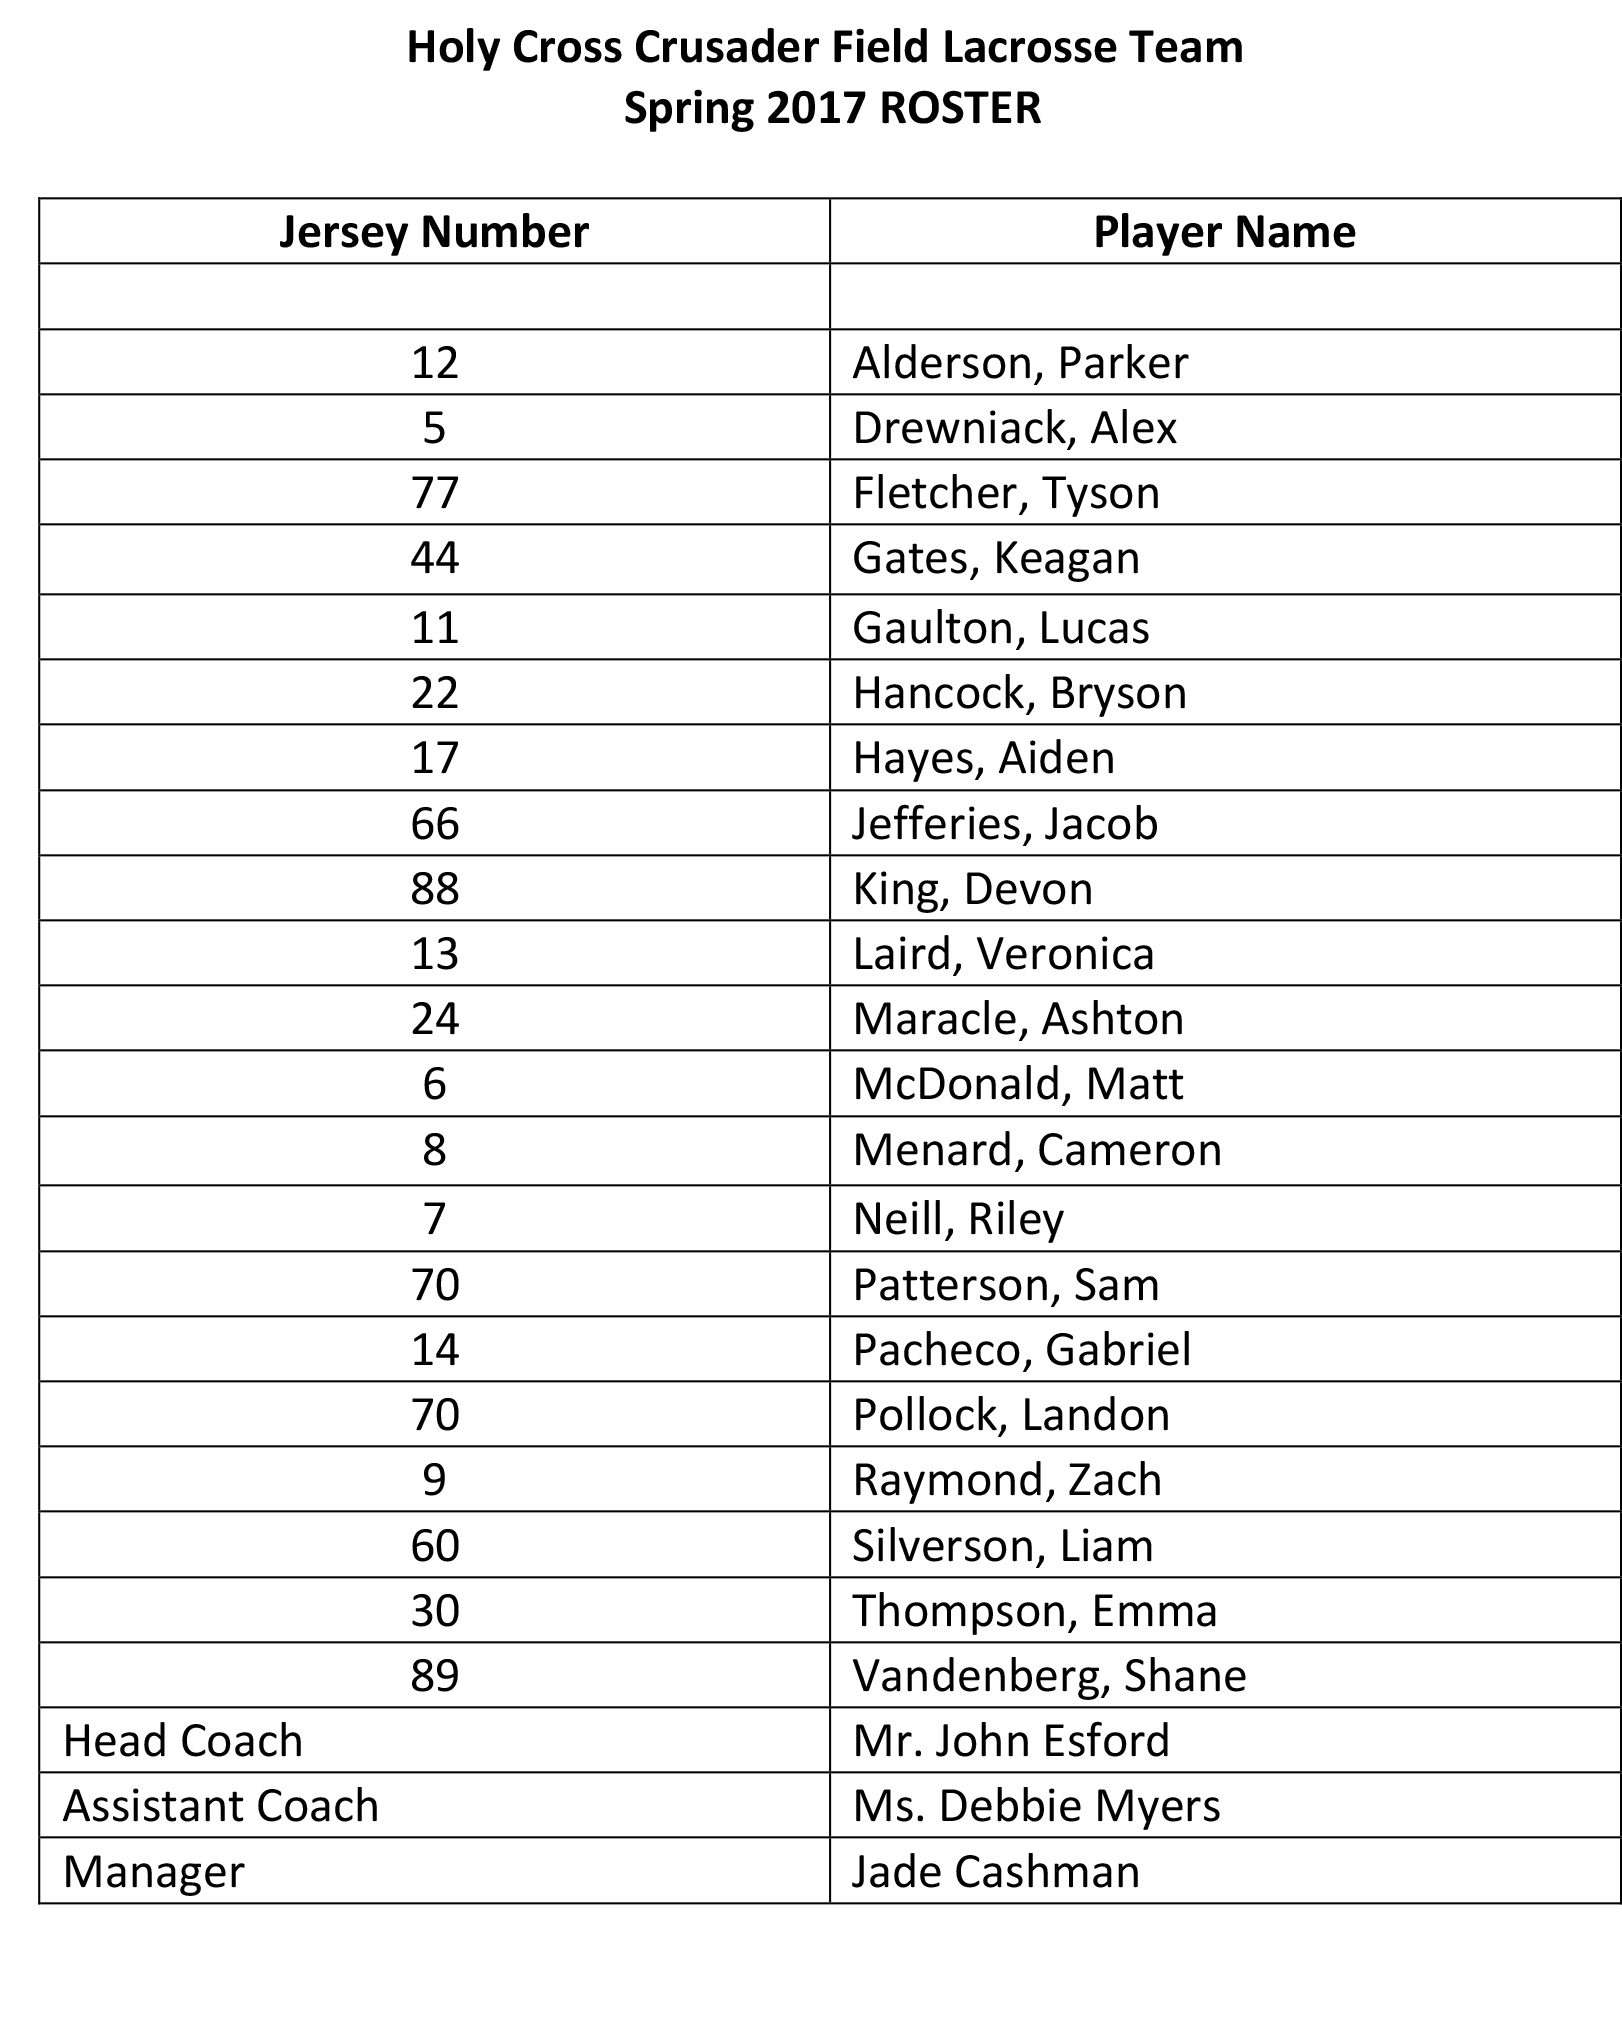 Holy Cross Crusader Field Lacrosse Team 2017 Roster.jpg